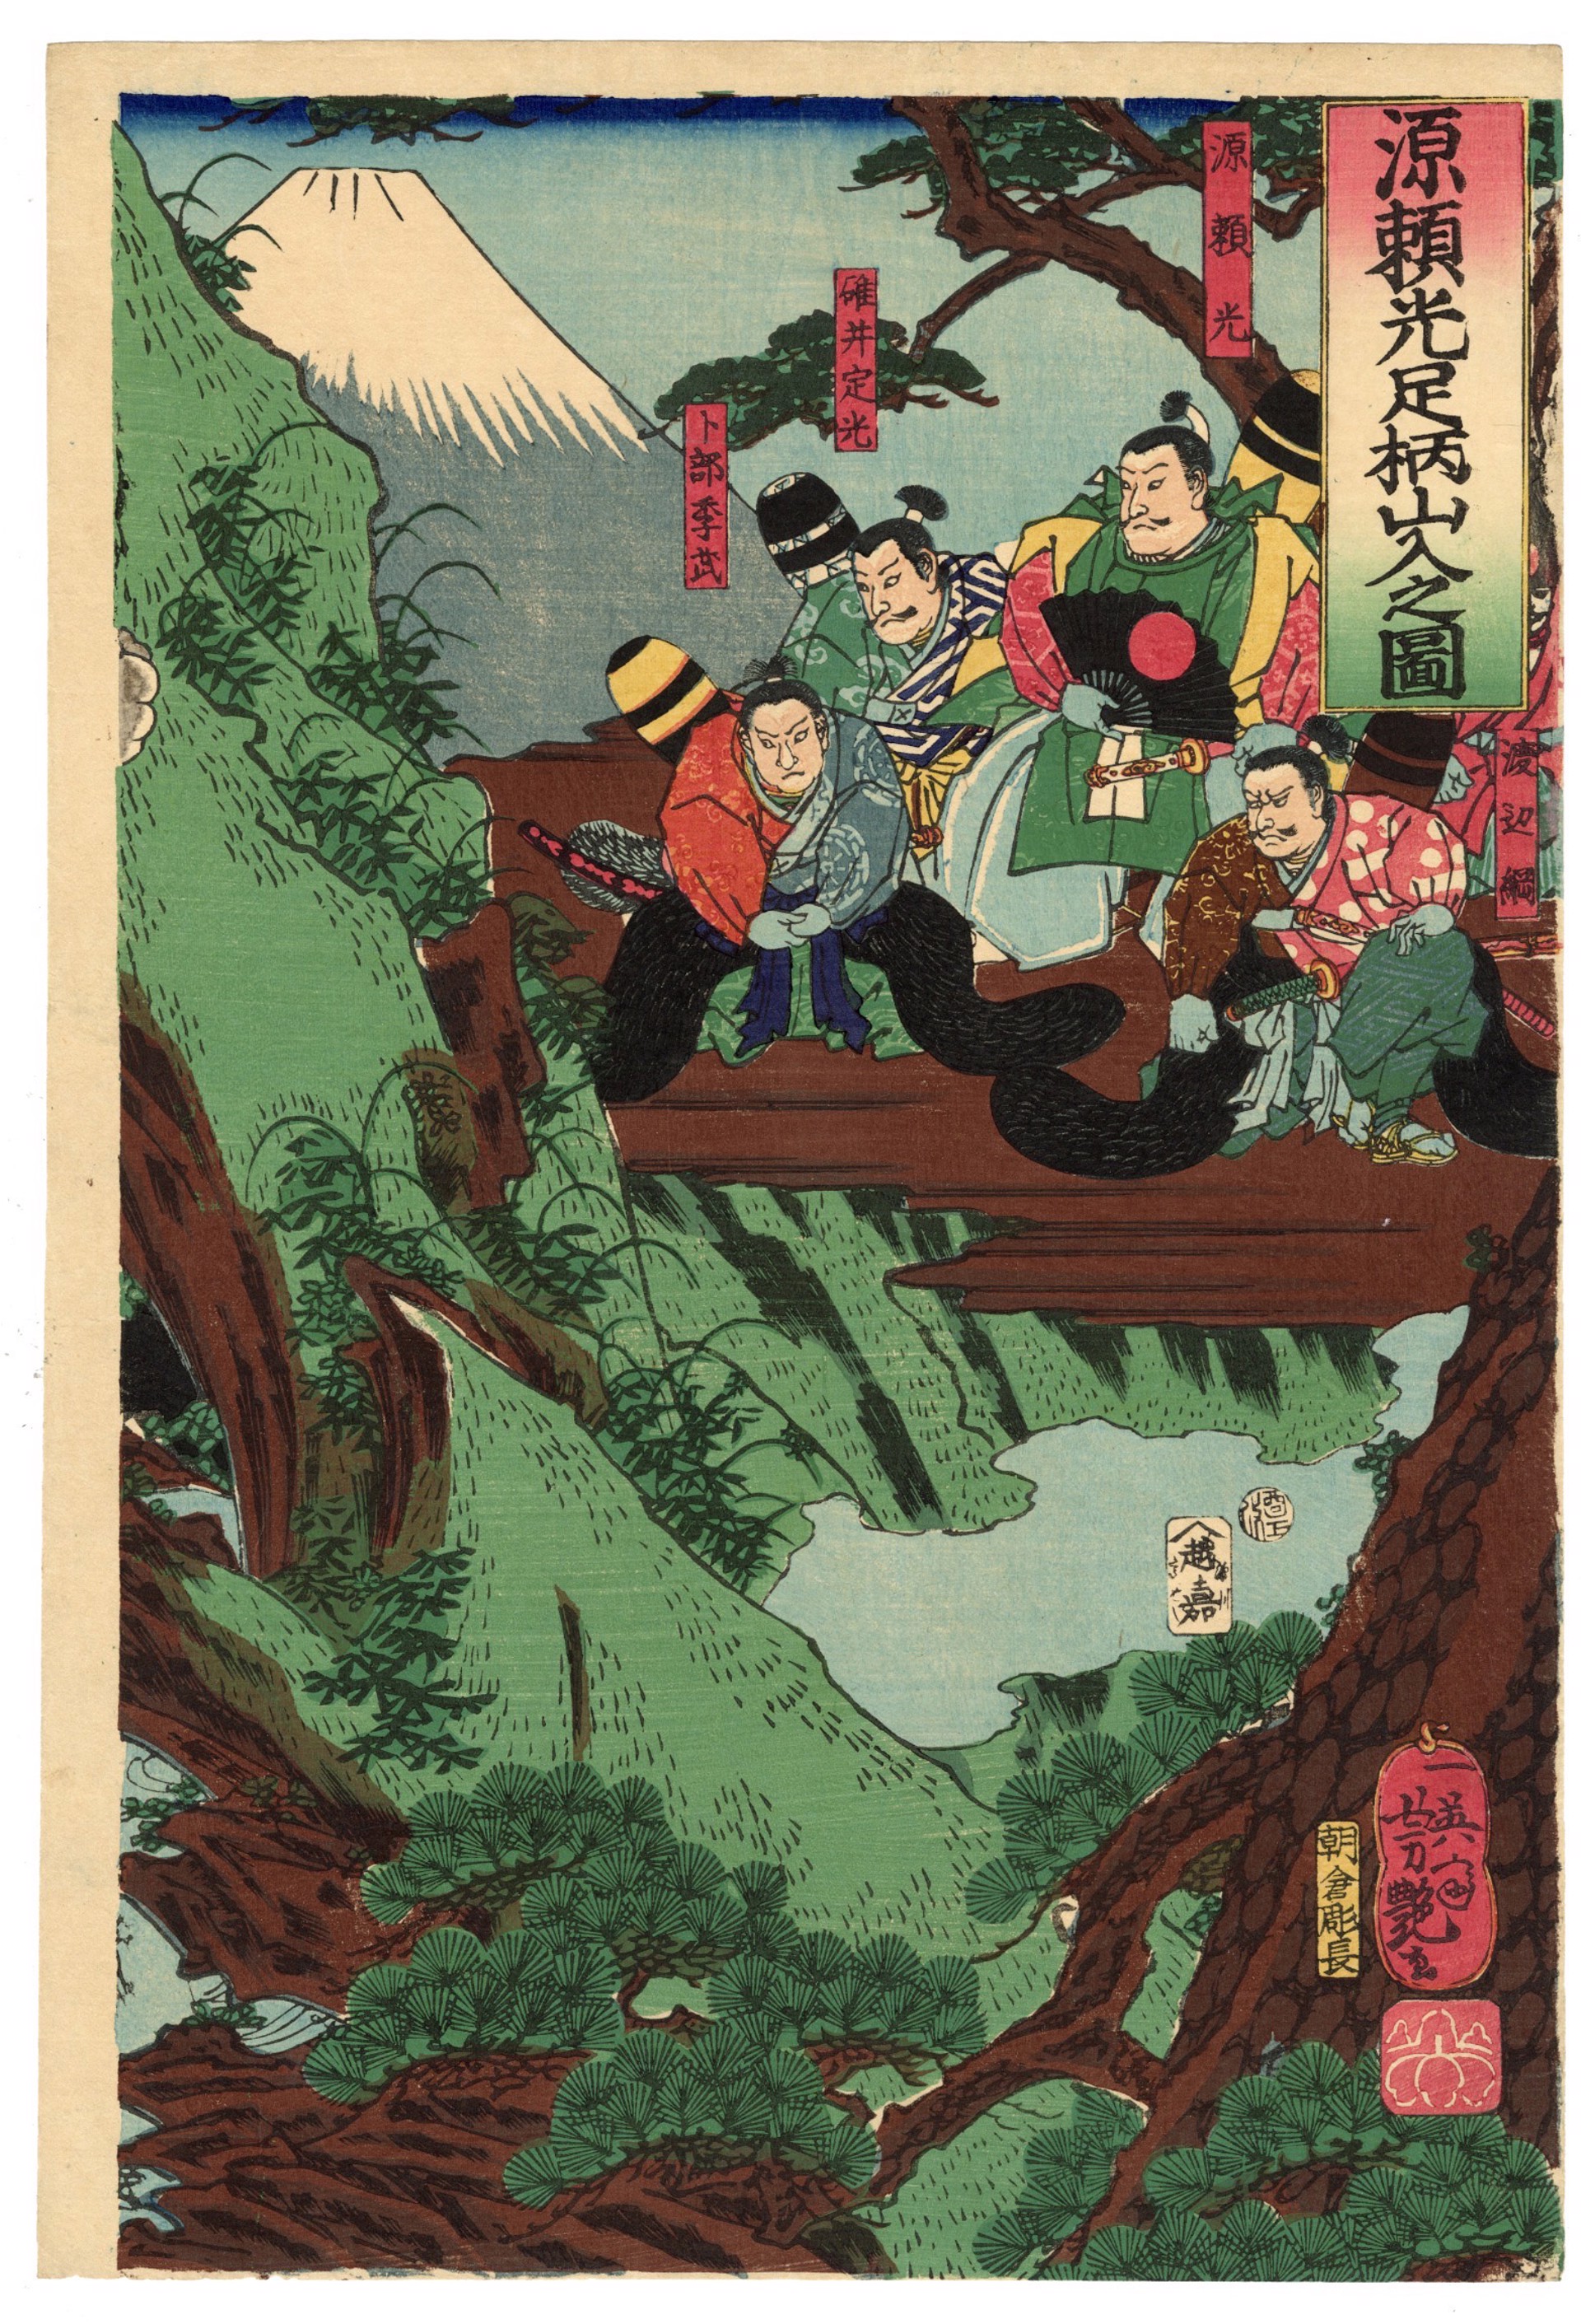 Minamoto no Yorimitsu Encounters Kaidomaru (Kintoki) on Mt. Ashigawa by Yoshitsuya